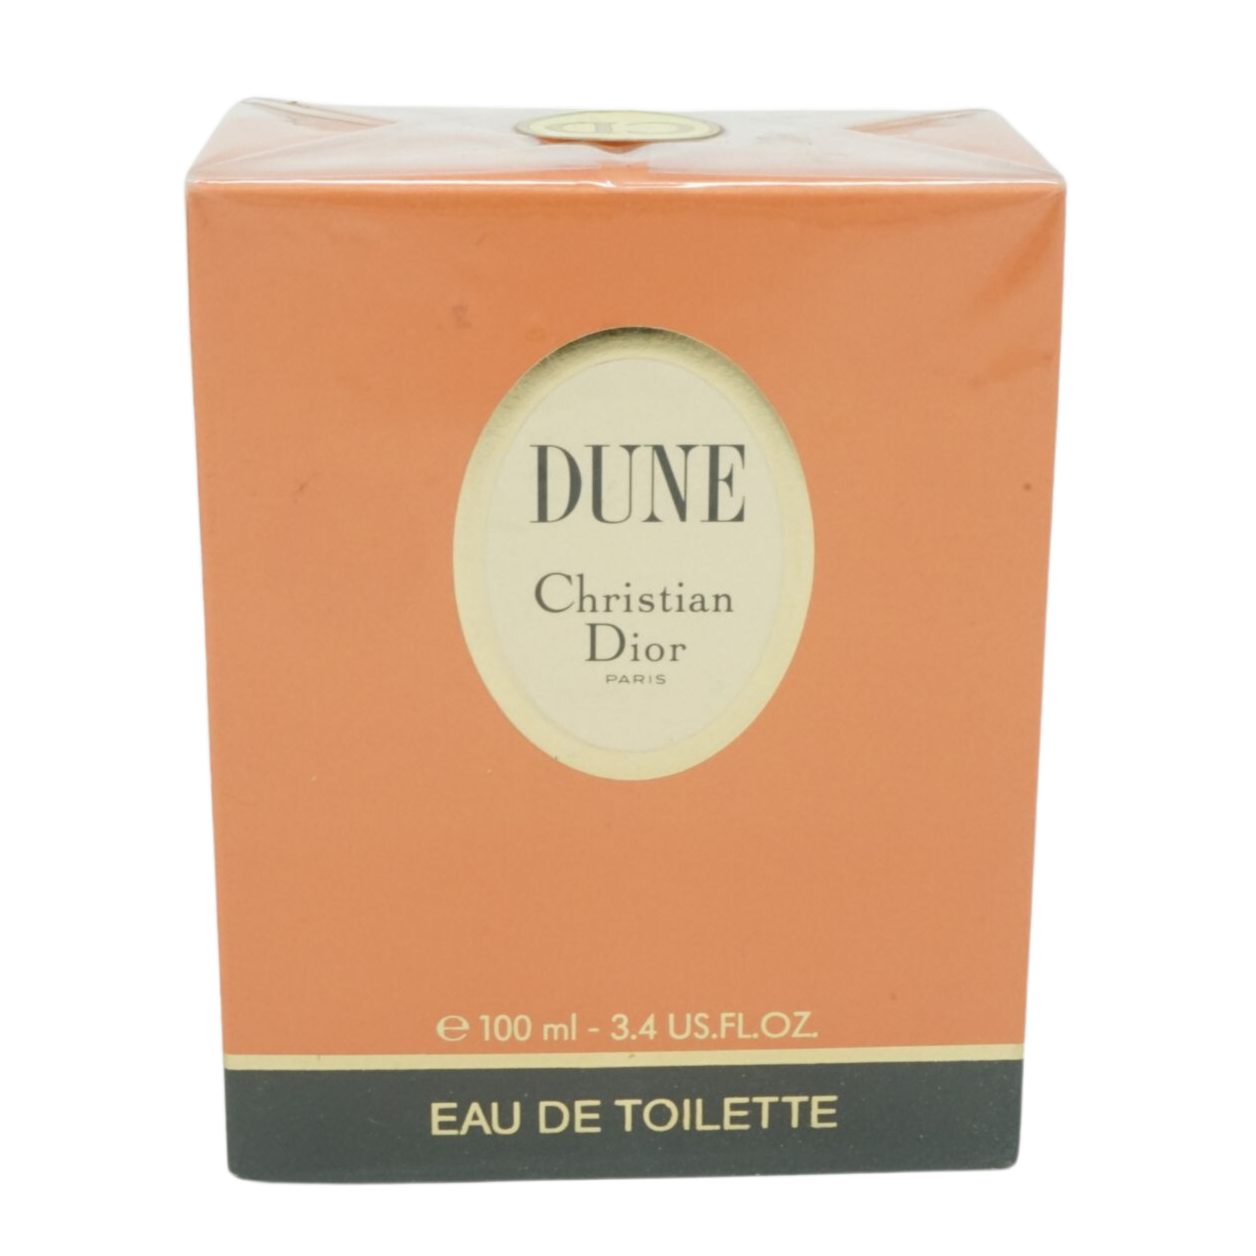 Dior Selbstbräunungstücher Christian Dior Dune Eau de Toilette 100ml